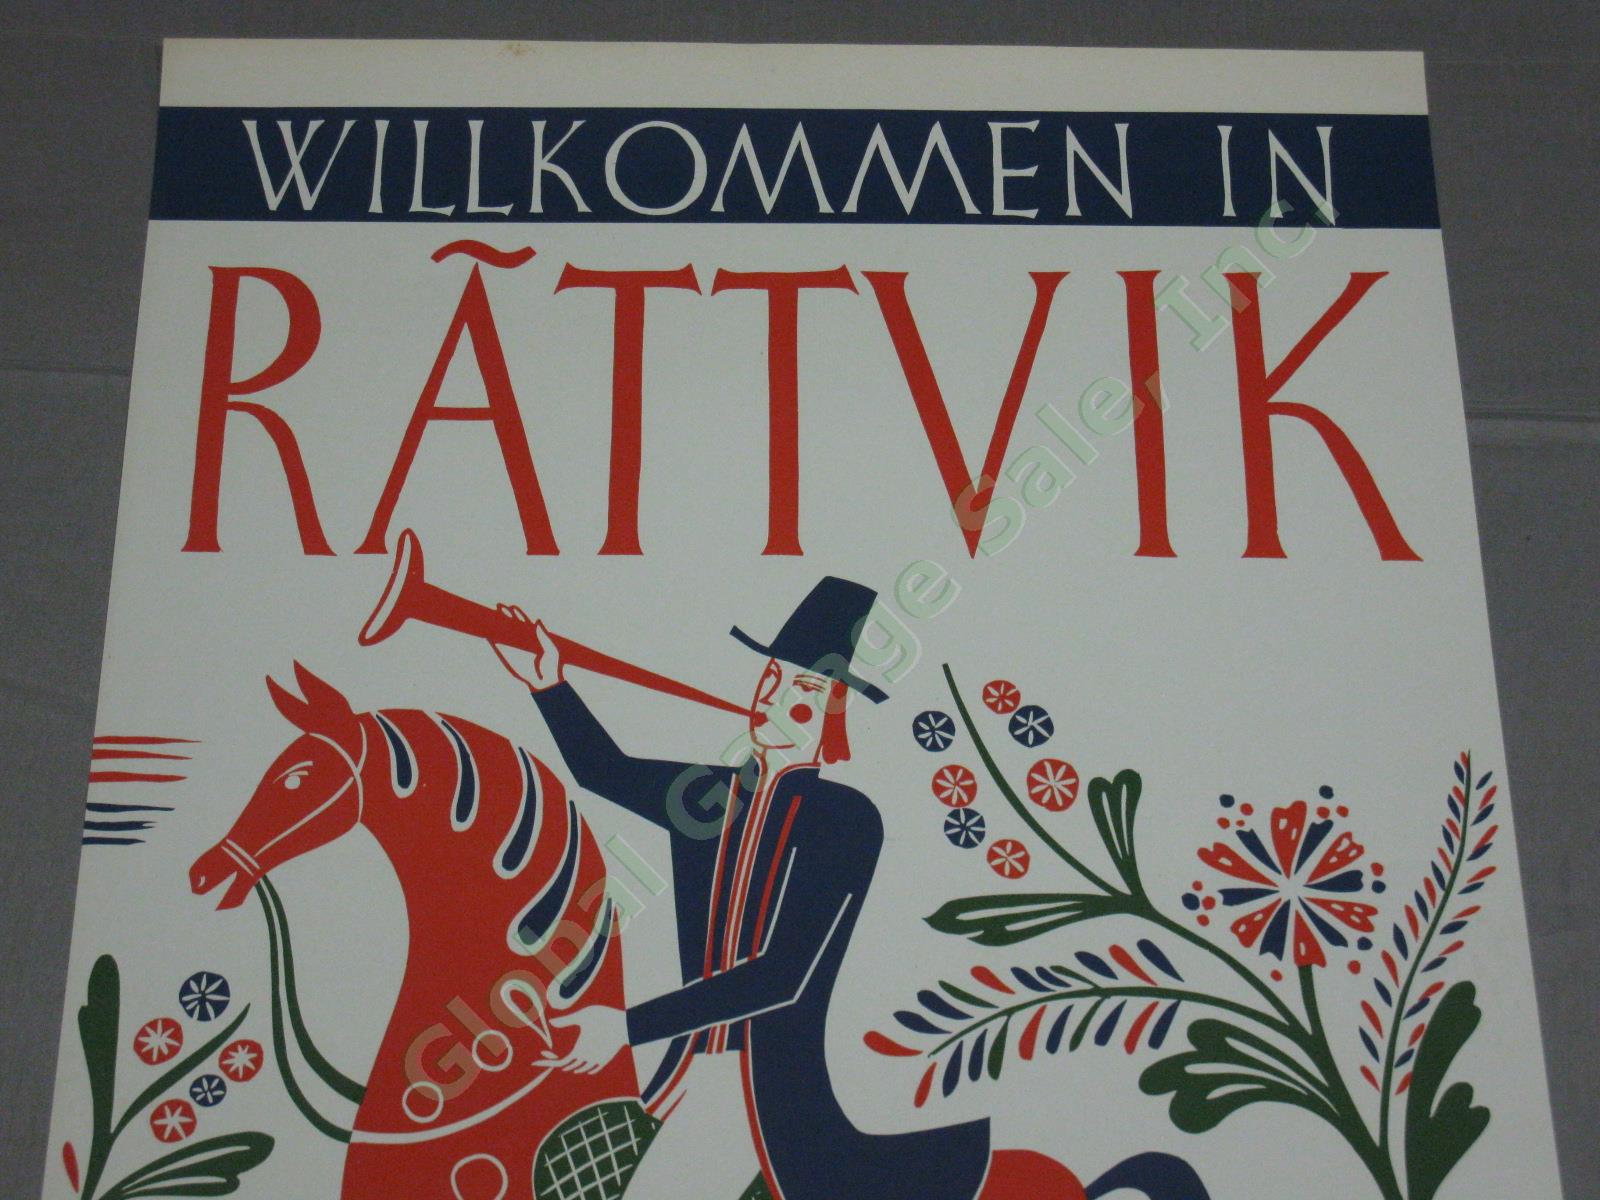 3 Vtg Swedish Sweden Travel Posters Rattvik Jerk Werkmester Vastmanland 1940s+ 2